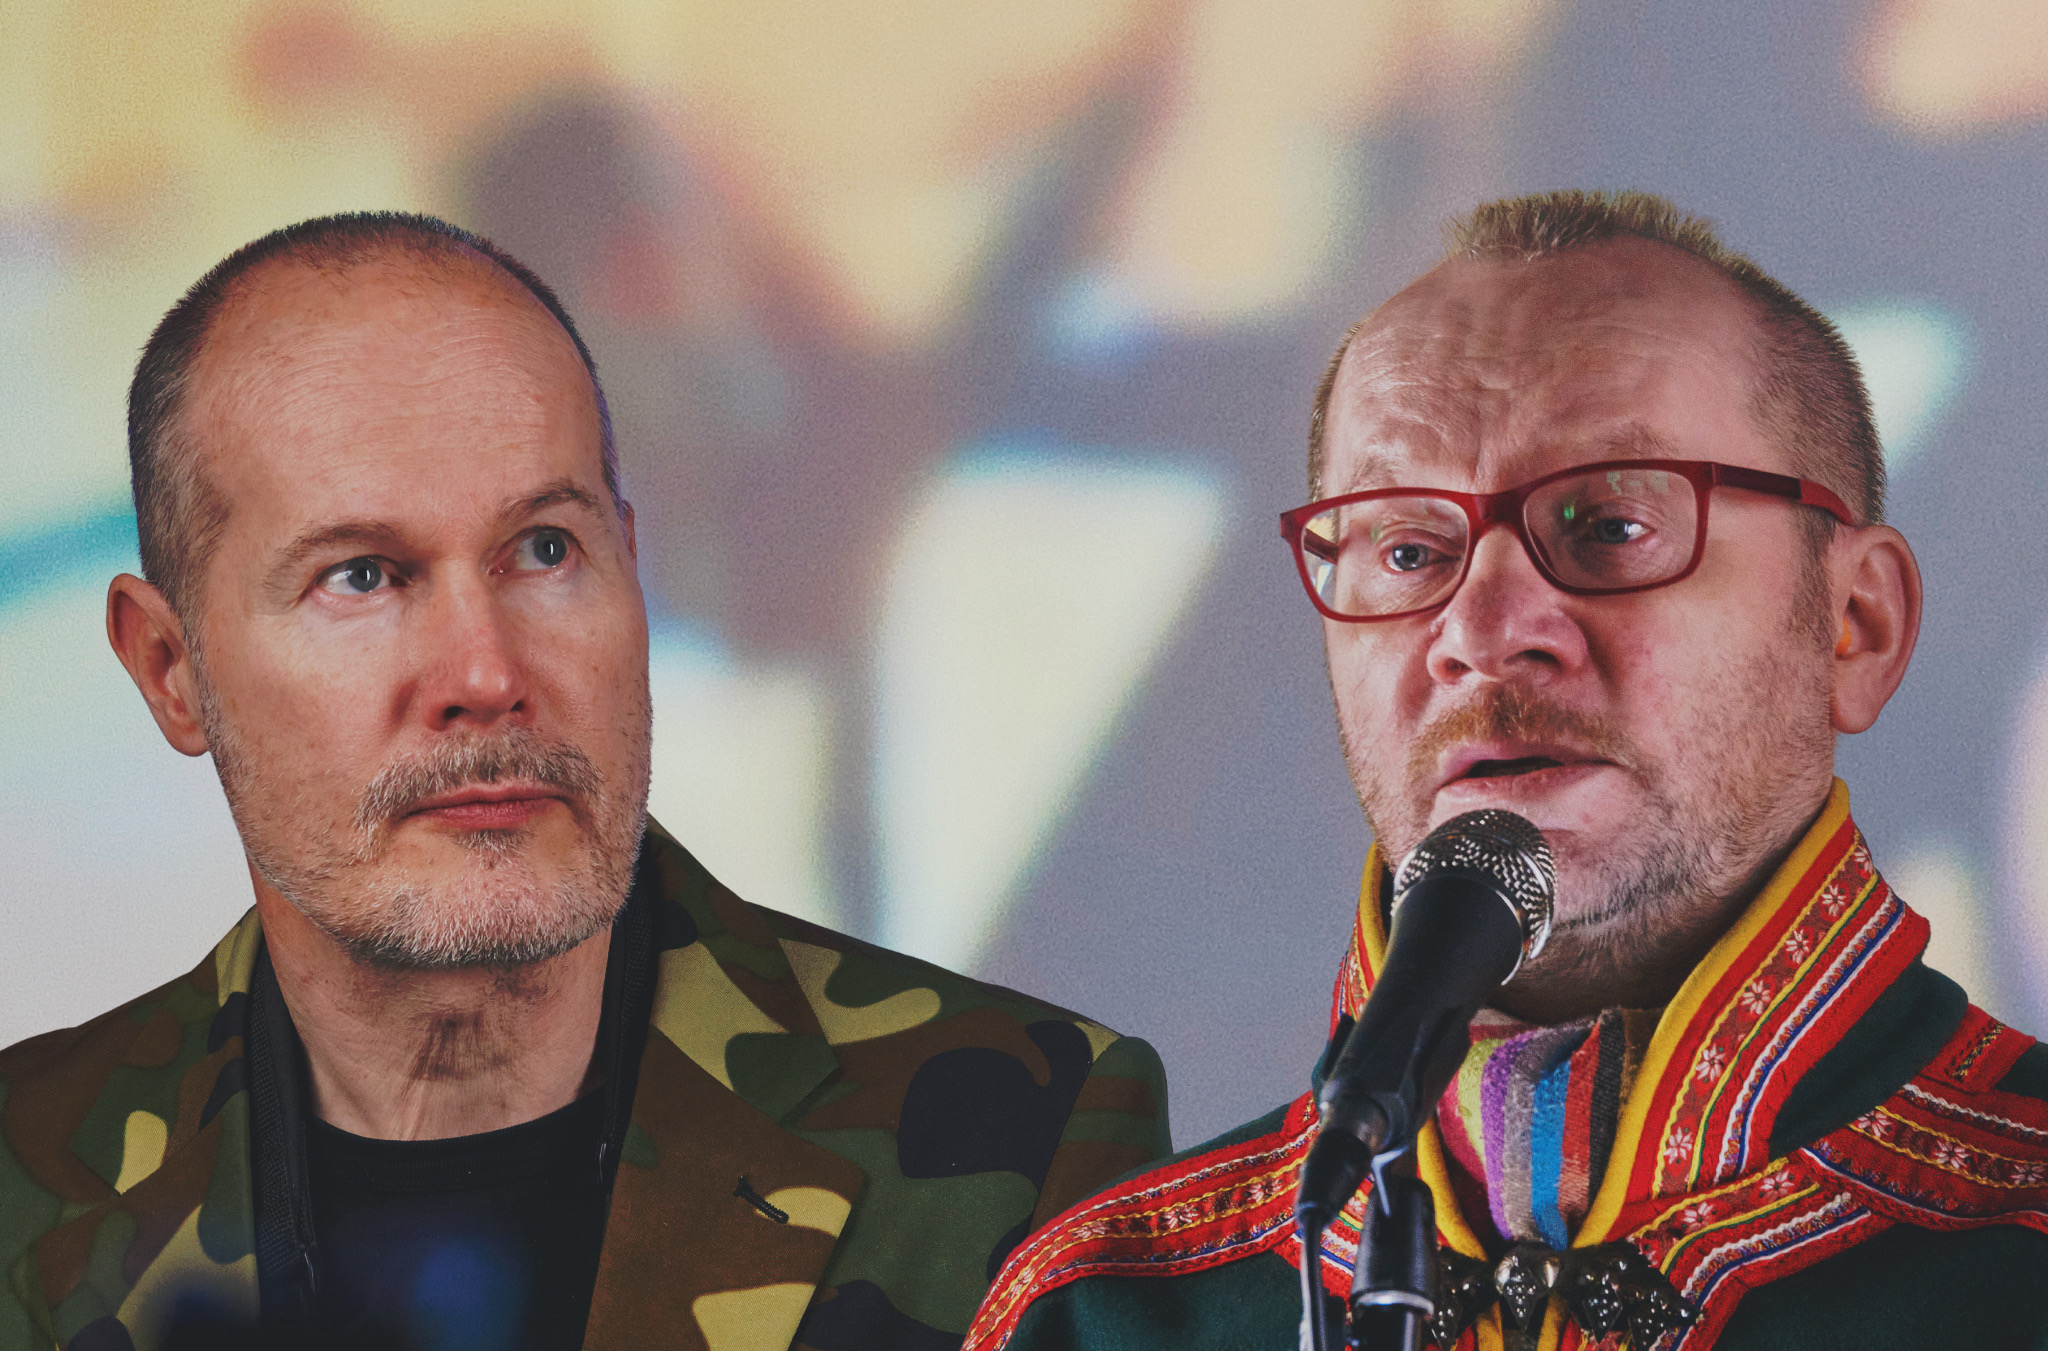 Kuvassa Tapani Rinne vasemmalla maastokuvioisessa takissa ja Wimme oikealla saamelaisessa kansallispuvussa.